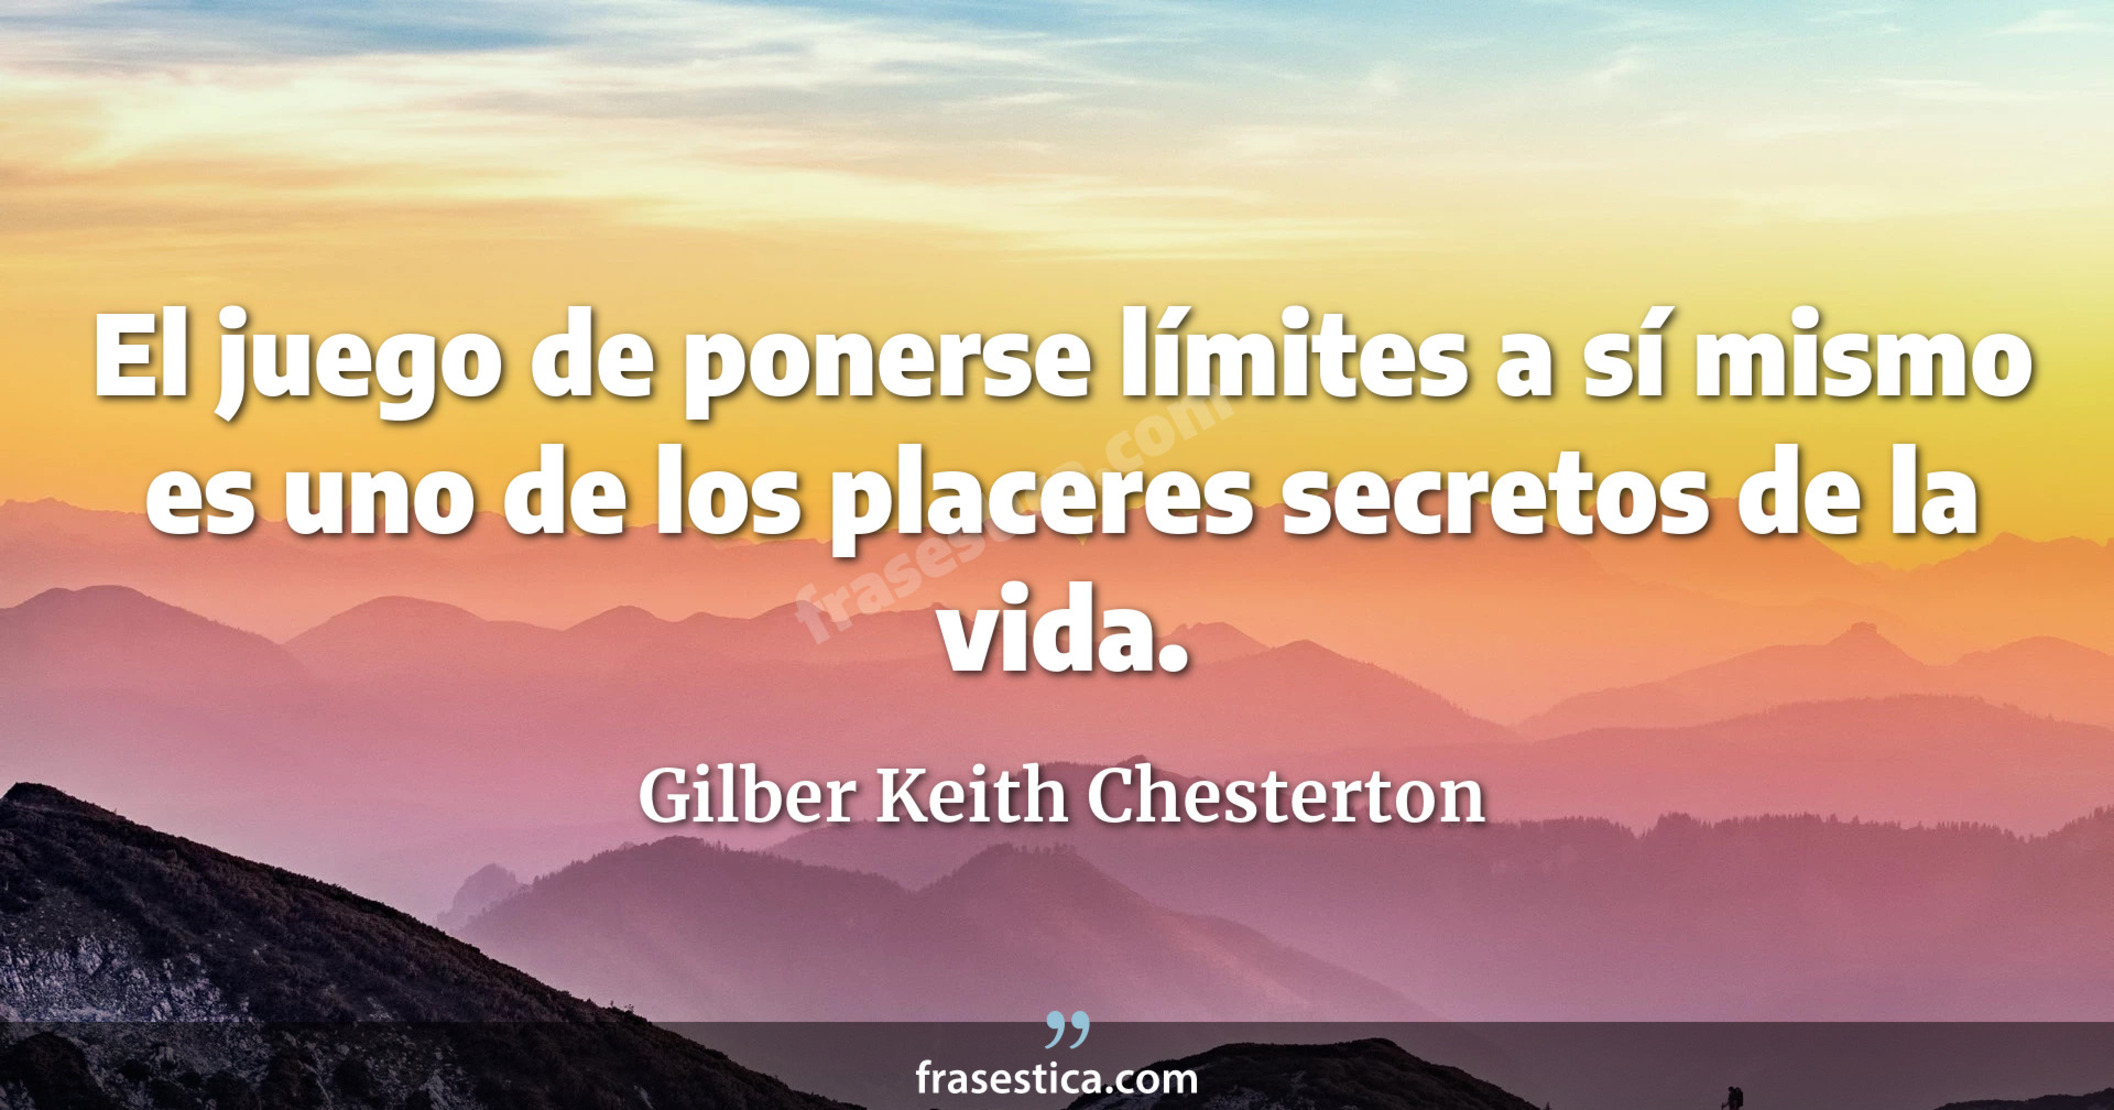 El juego de ponerse límites a sí mismo es uno de los placeres secretos de la vida. - Gilber Keith Chesterton